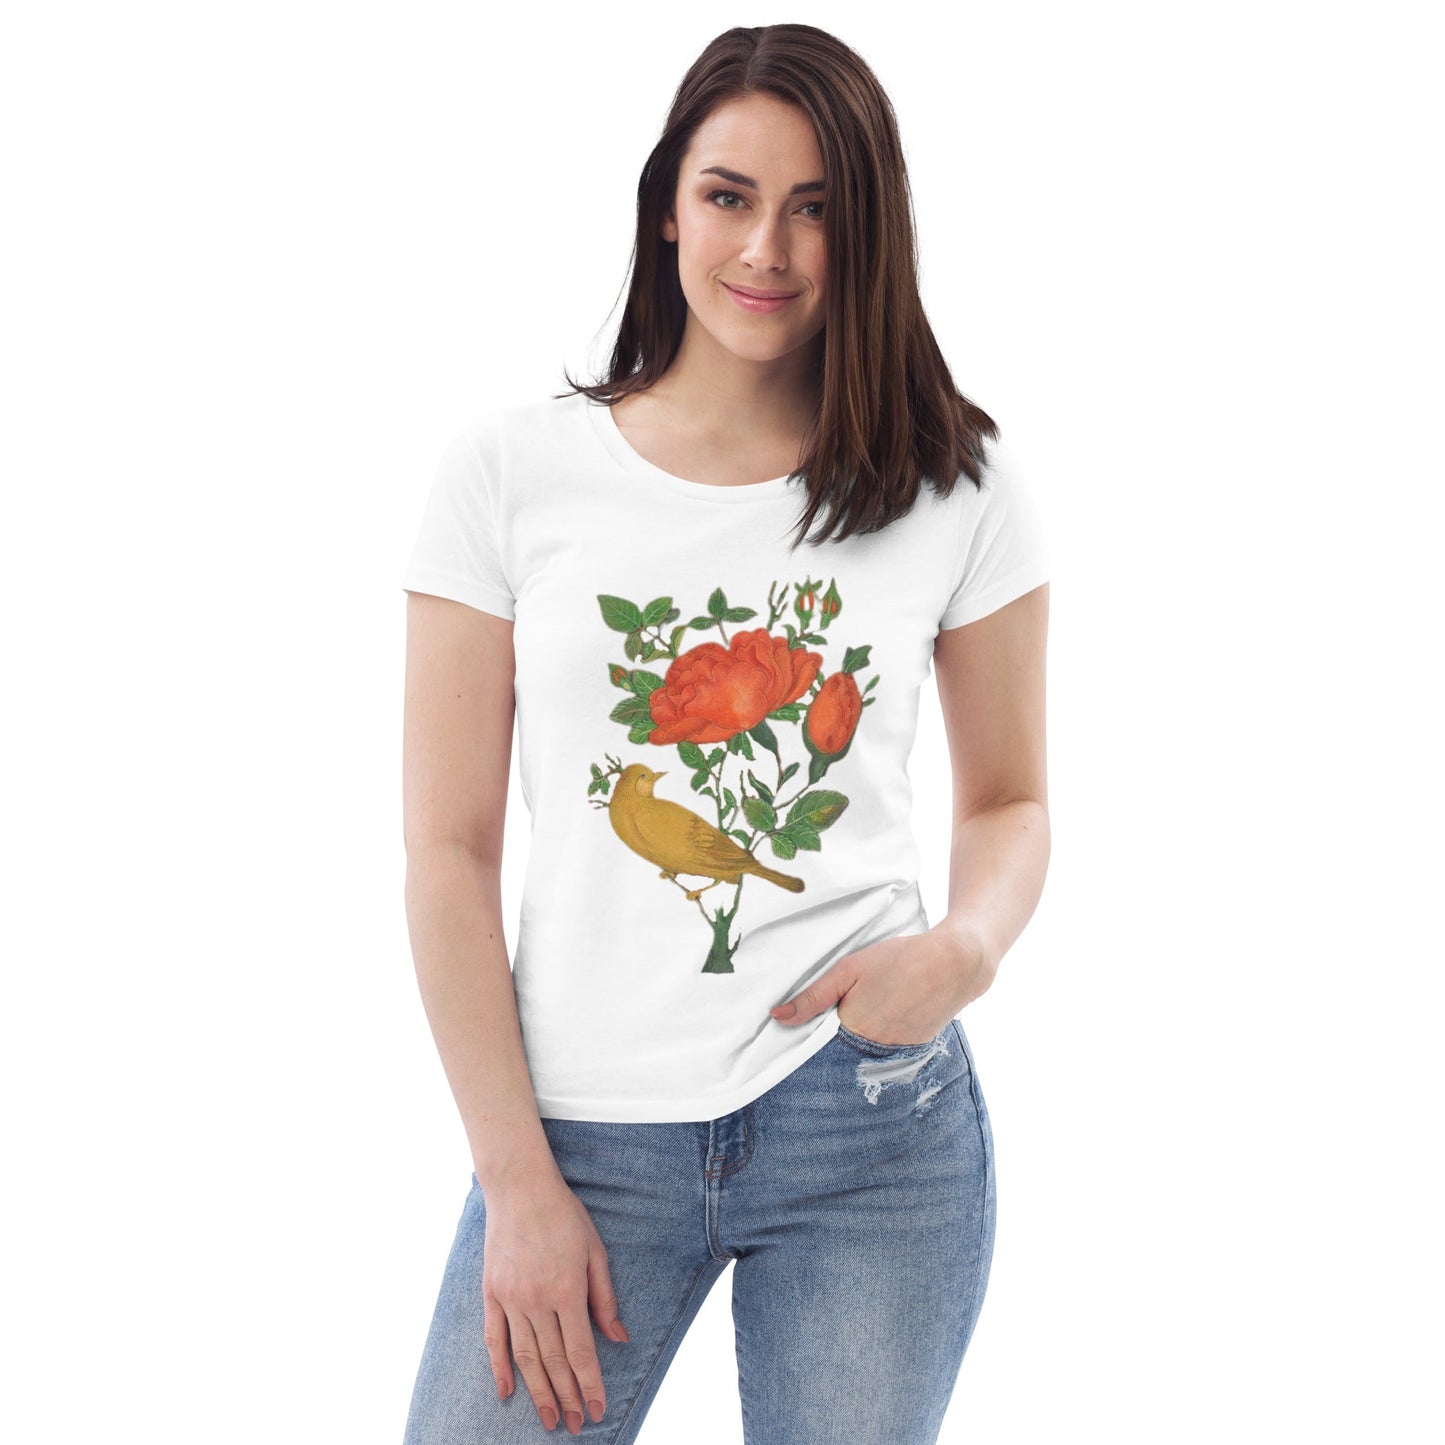 womens-eco-tshirt-flower-and-bird-white